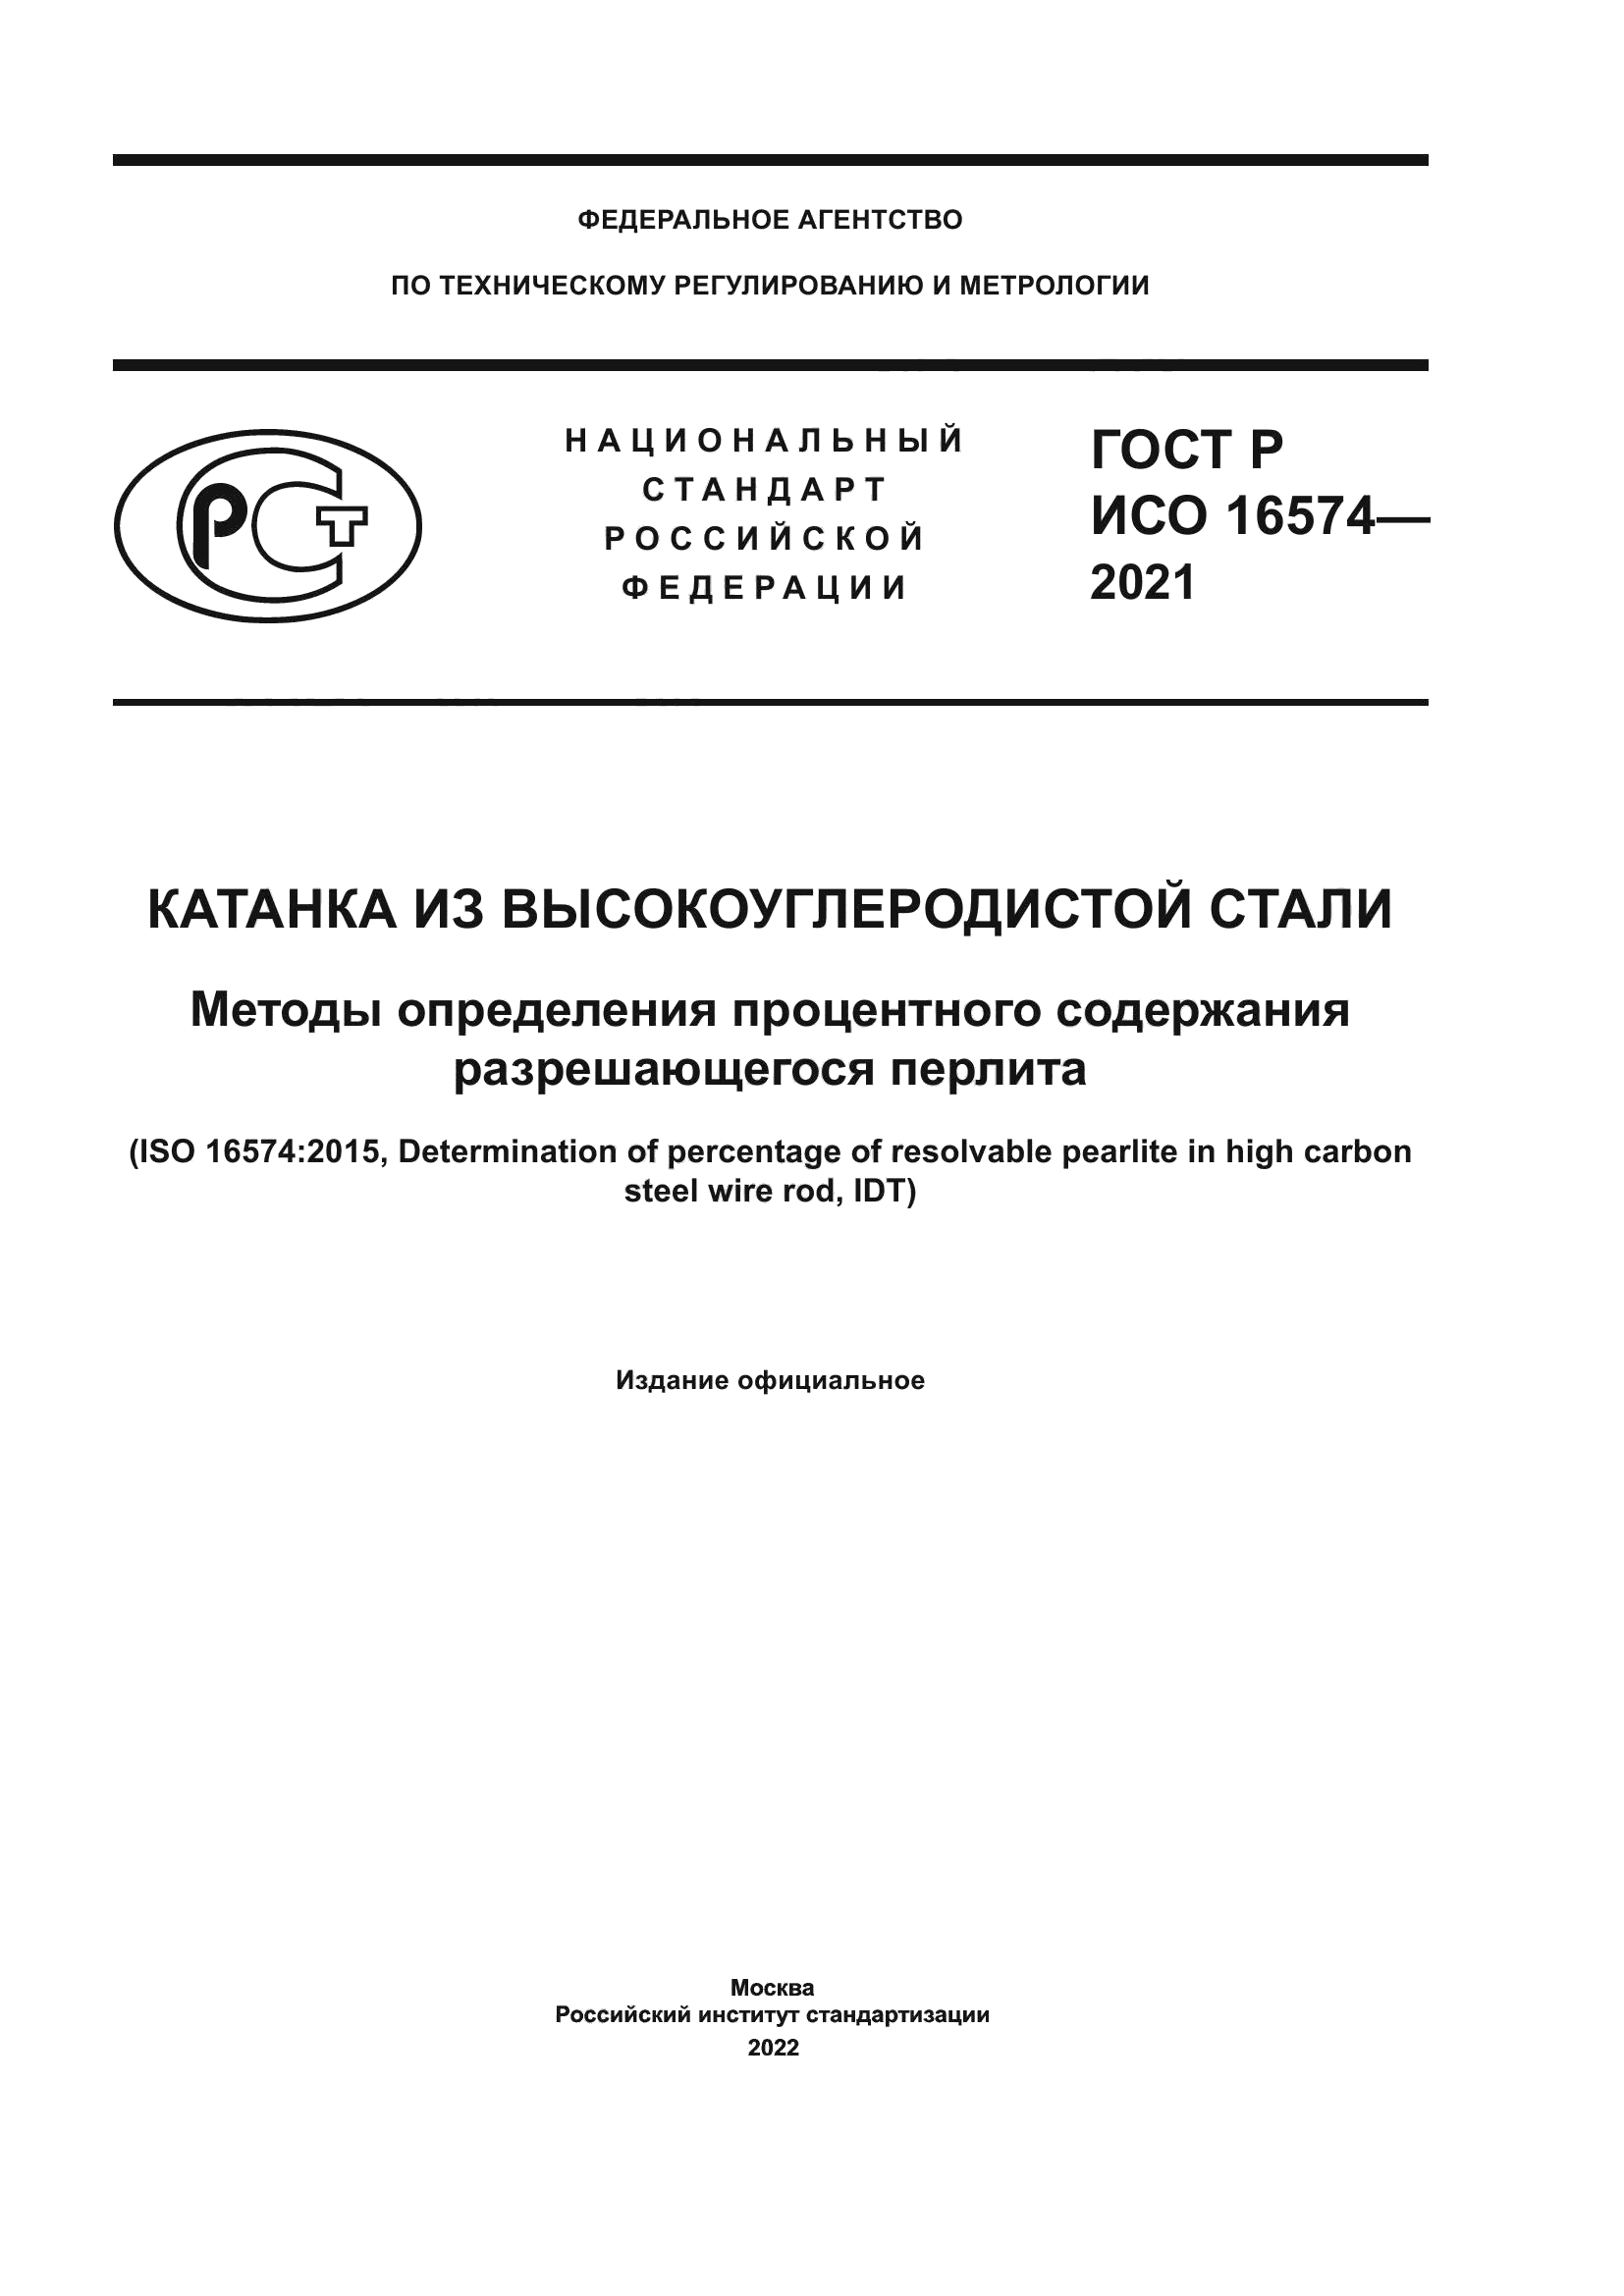 ГОСТ Р ИСО 16574-2021